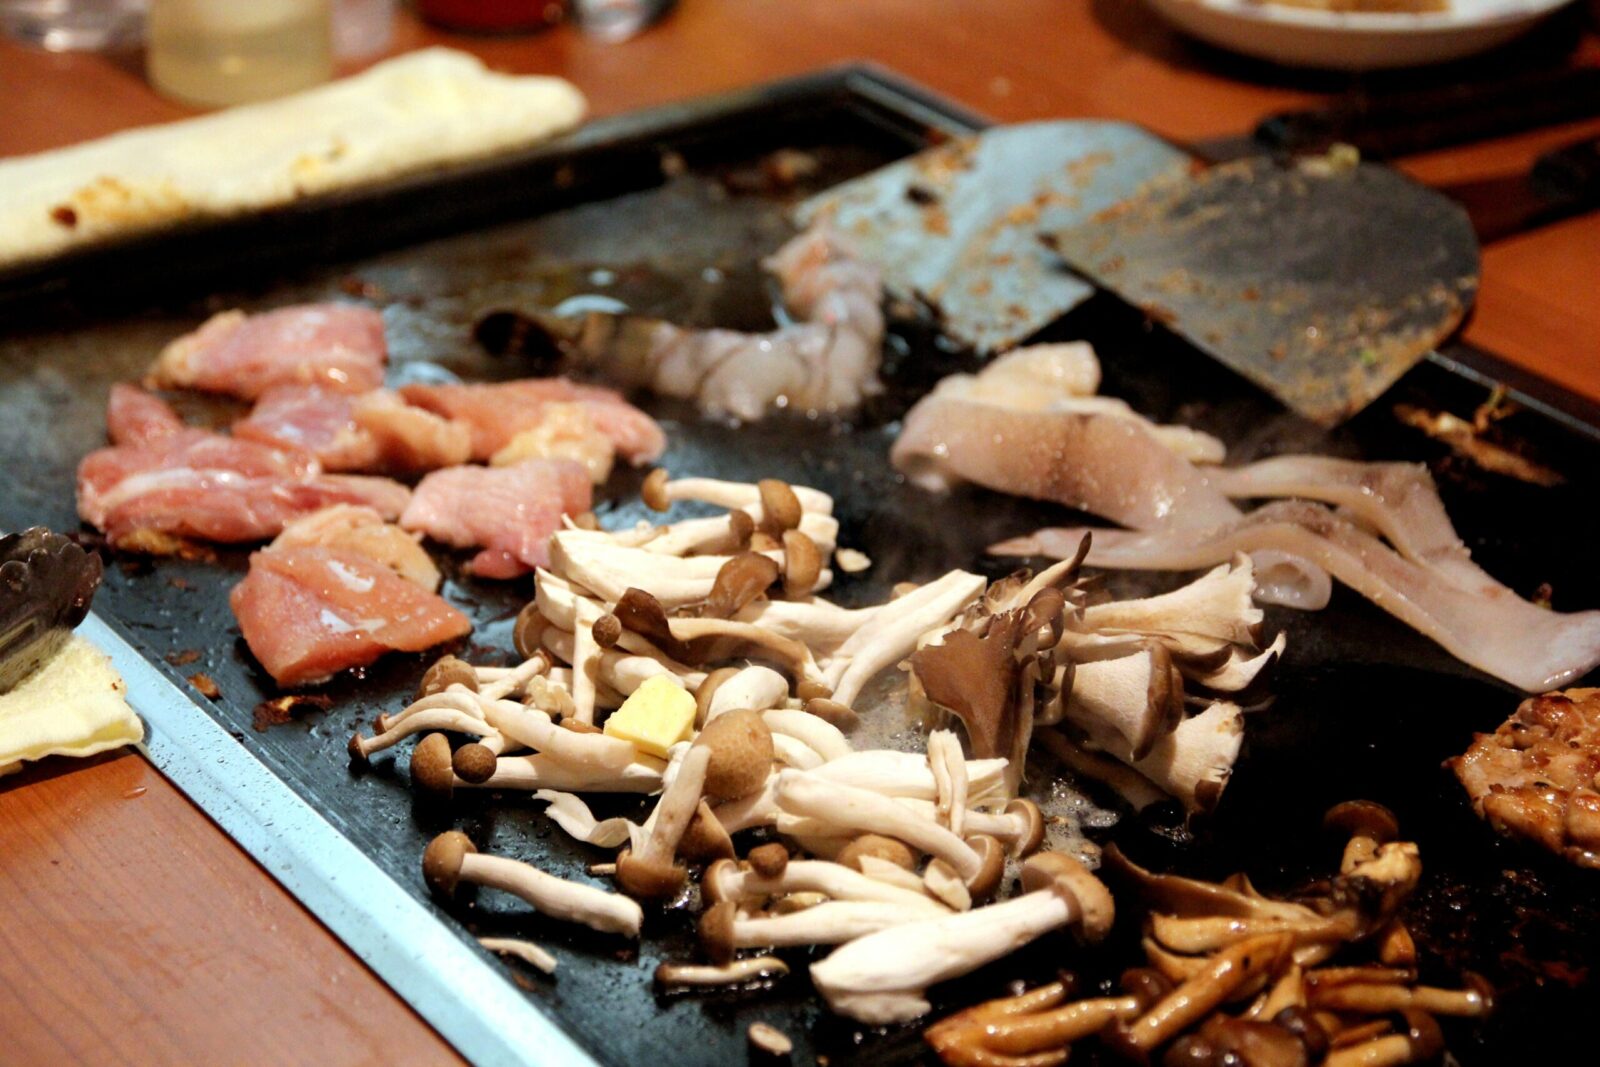 Fugetsu 4-Chome Restaurant